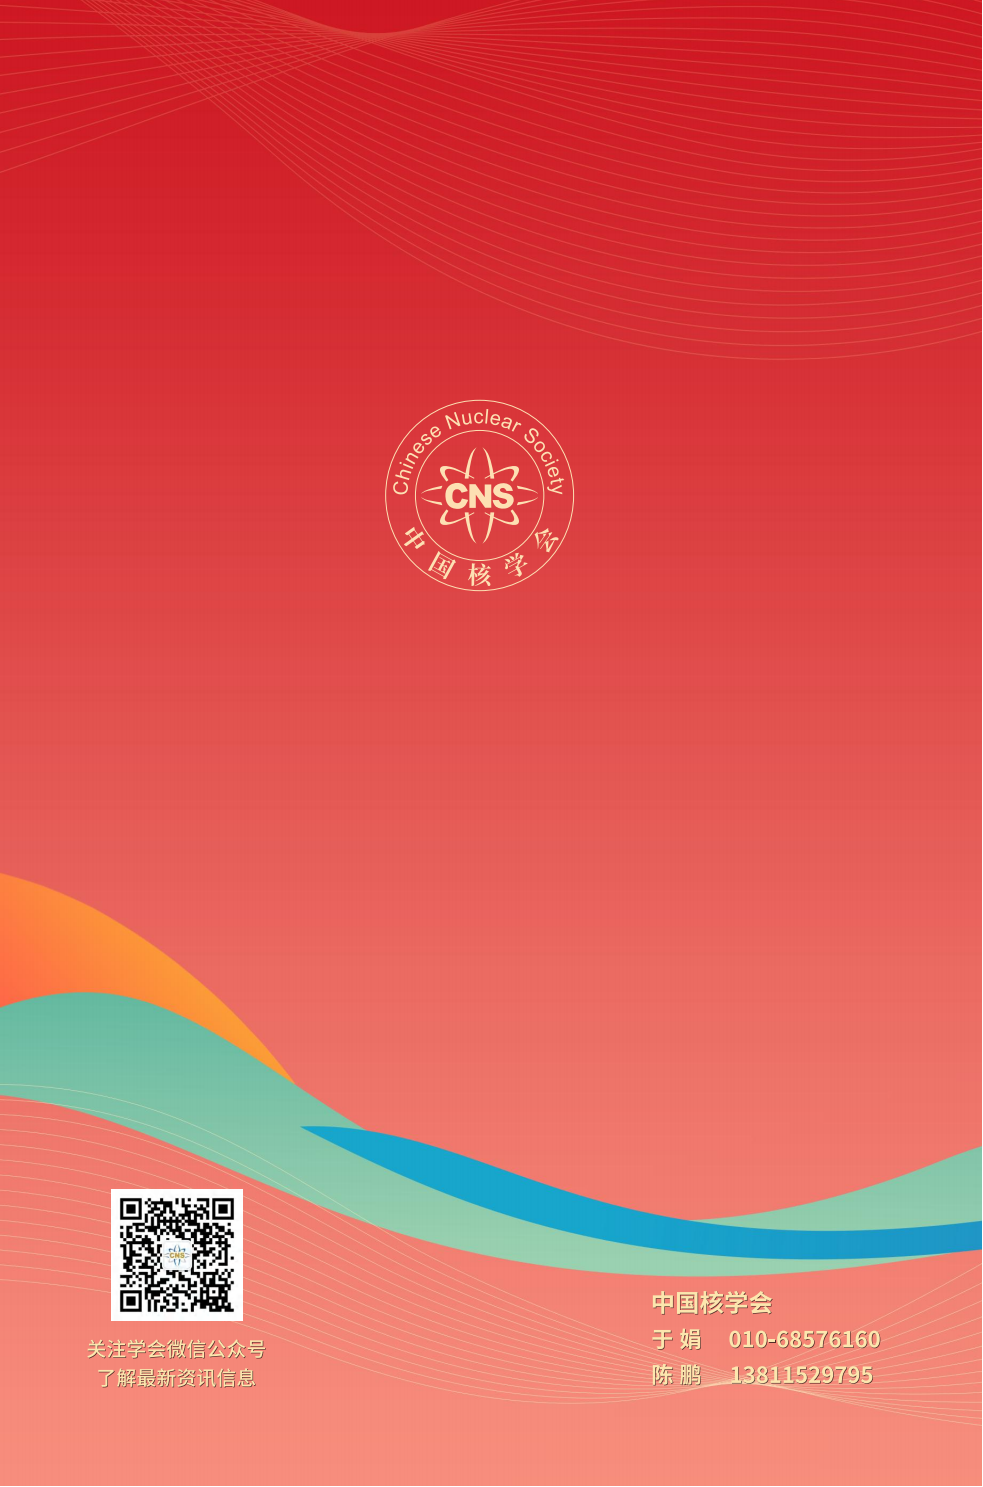 20230811-中国核学会2023年学术年会招展手册V5_07.png